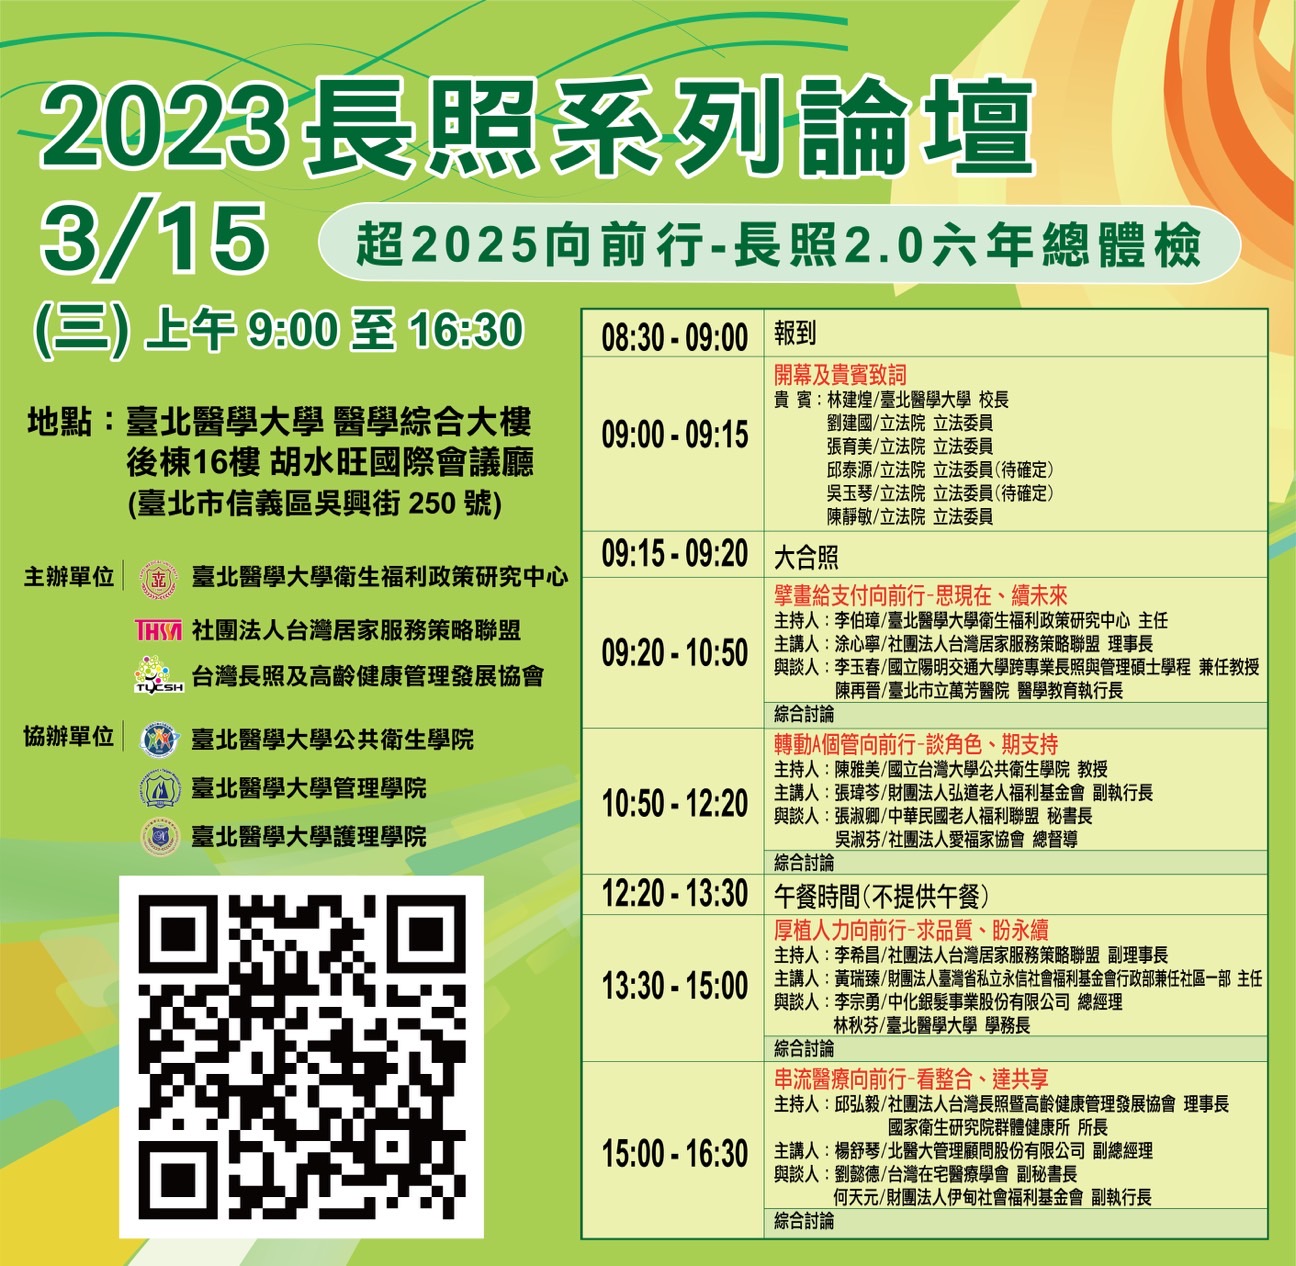 (活動轉知)「 超2025向前行-長照2.0六年總體檢 」說明 / Purpose of the Seminar  